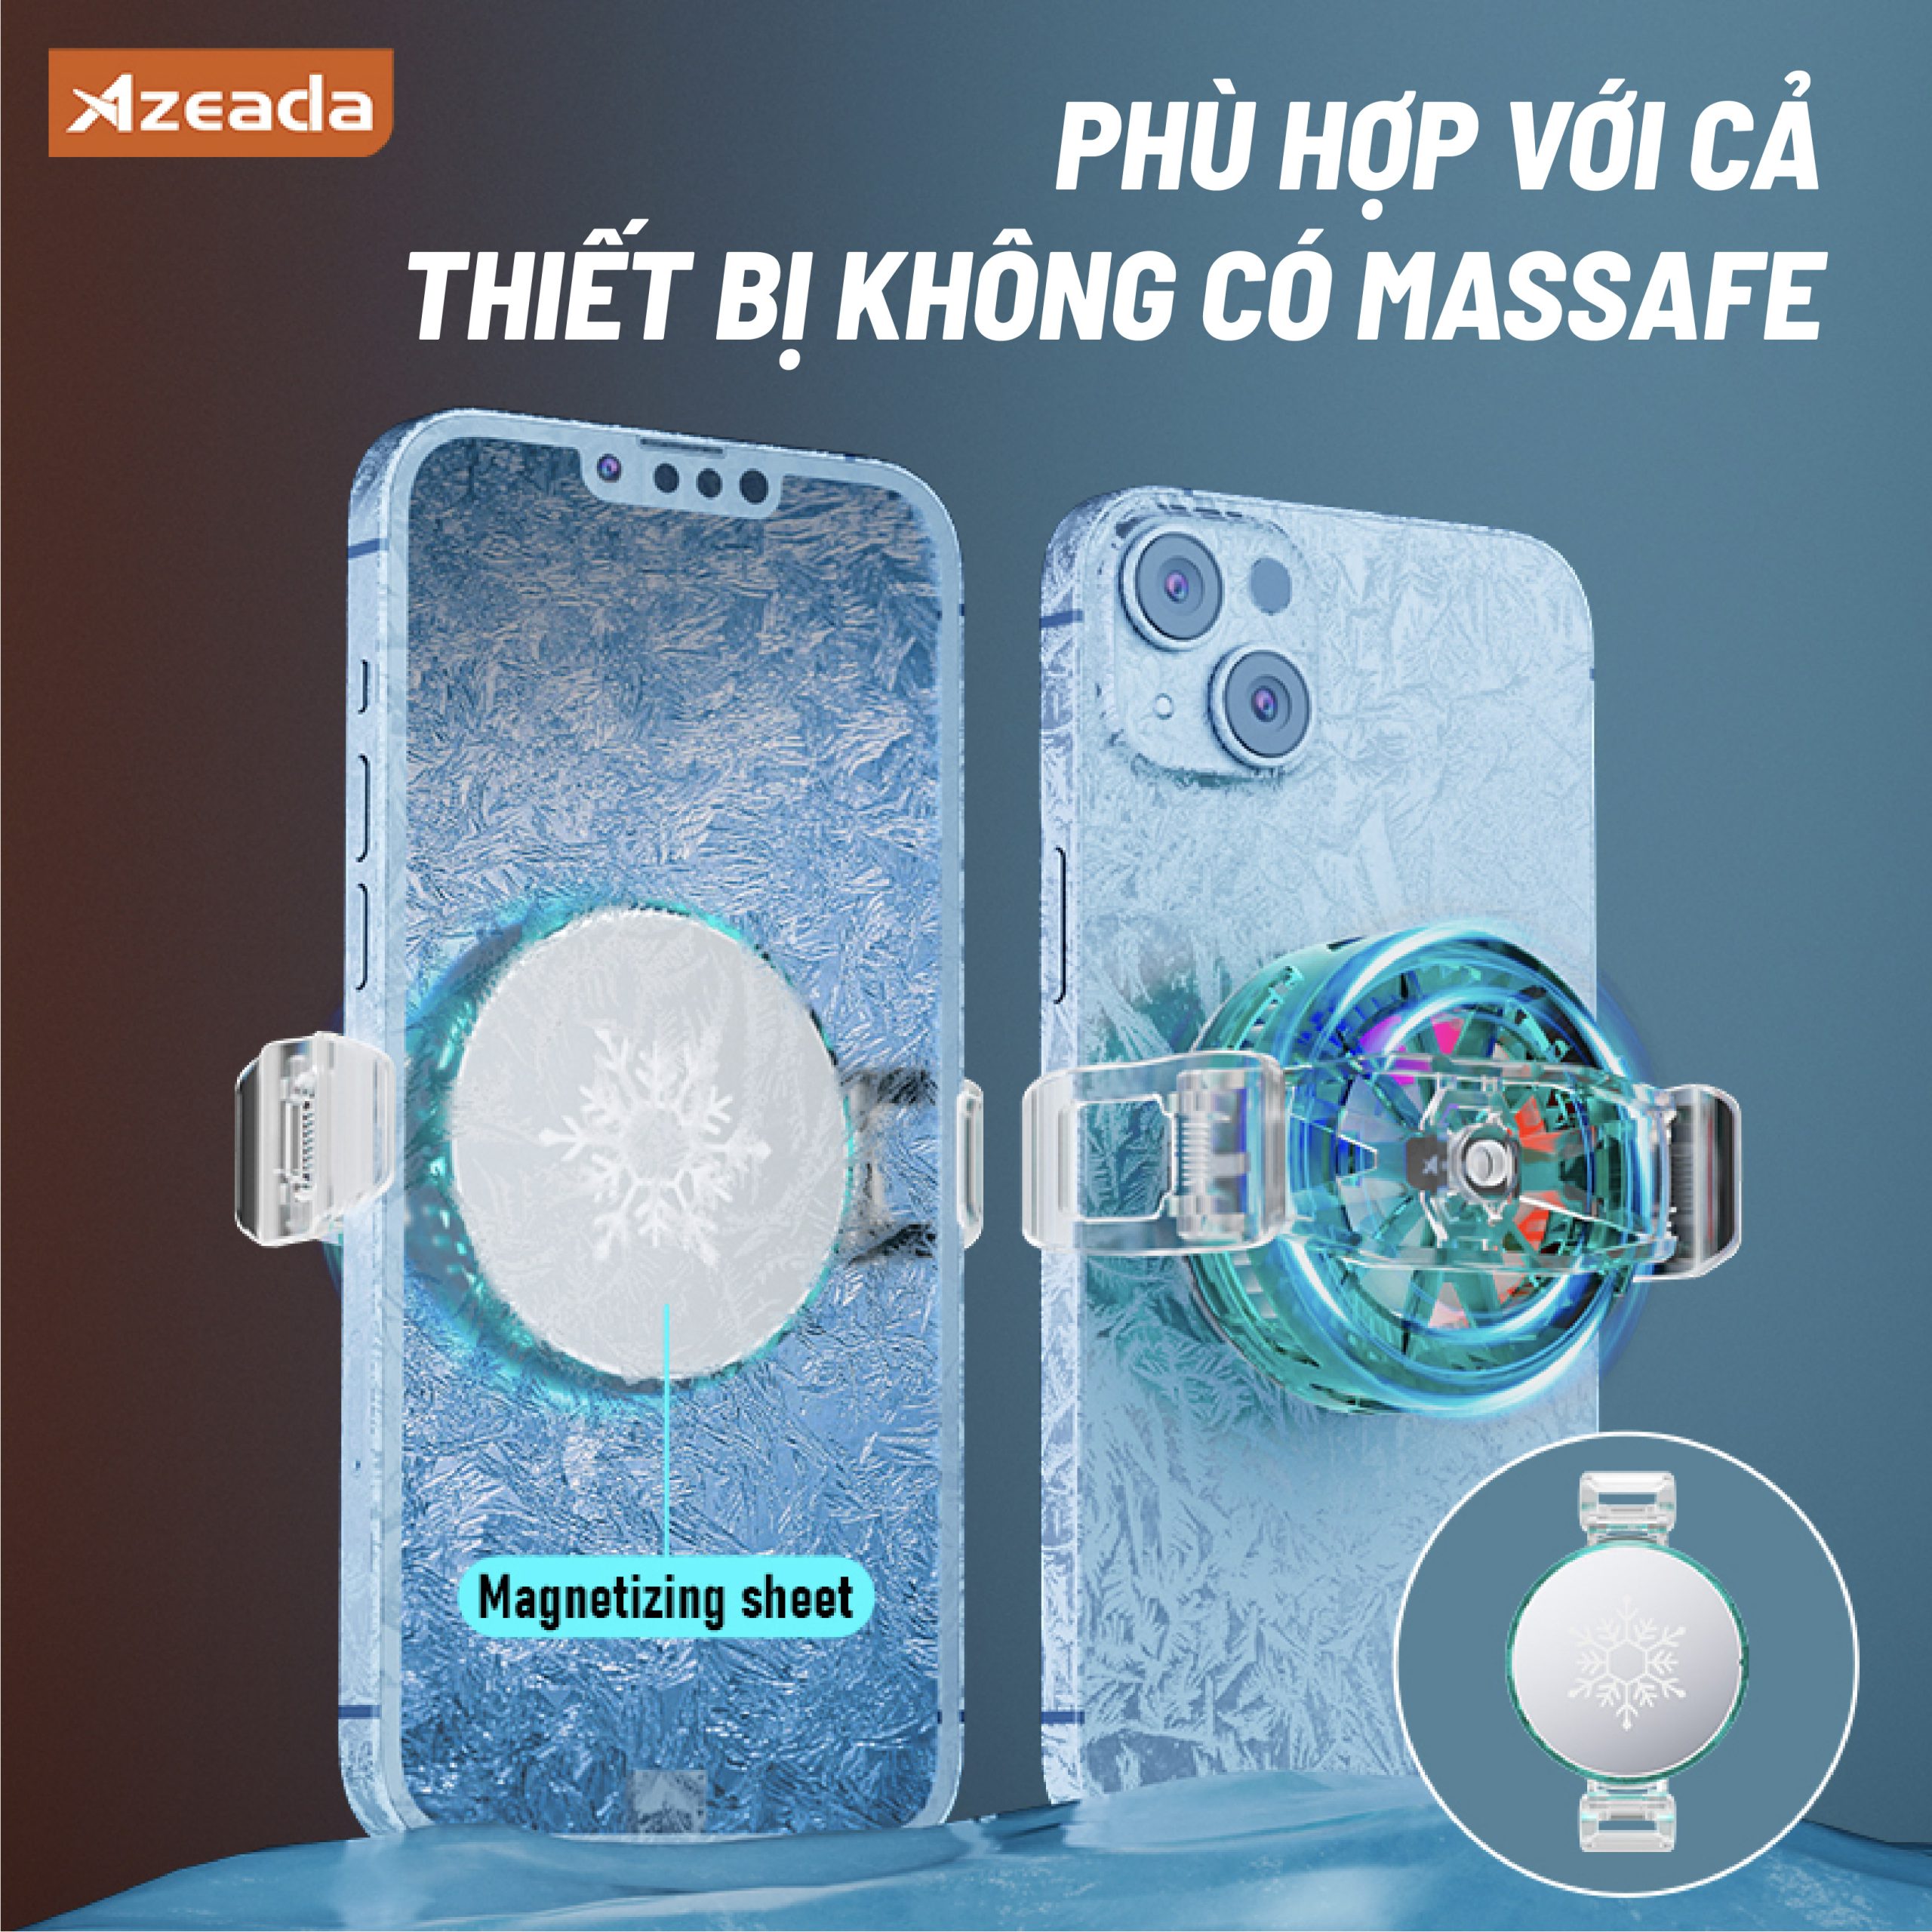 Sò tản nhiệt điện thoại Azeada AZ-X01 trong suốt 